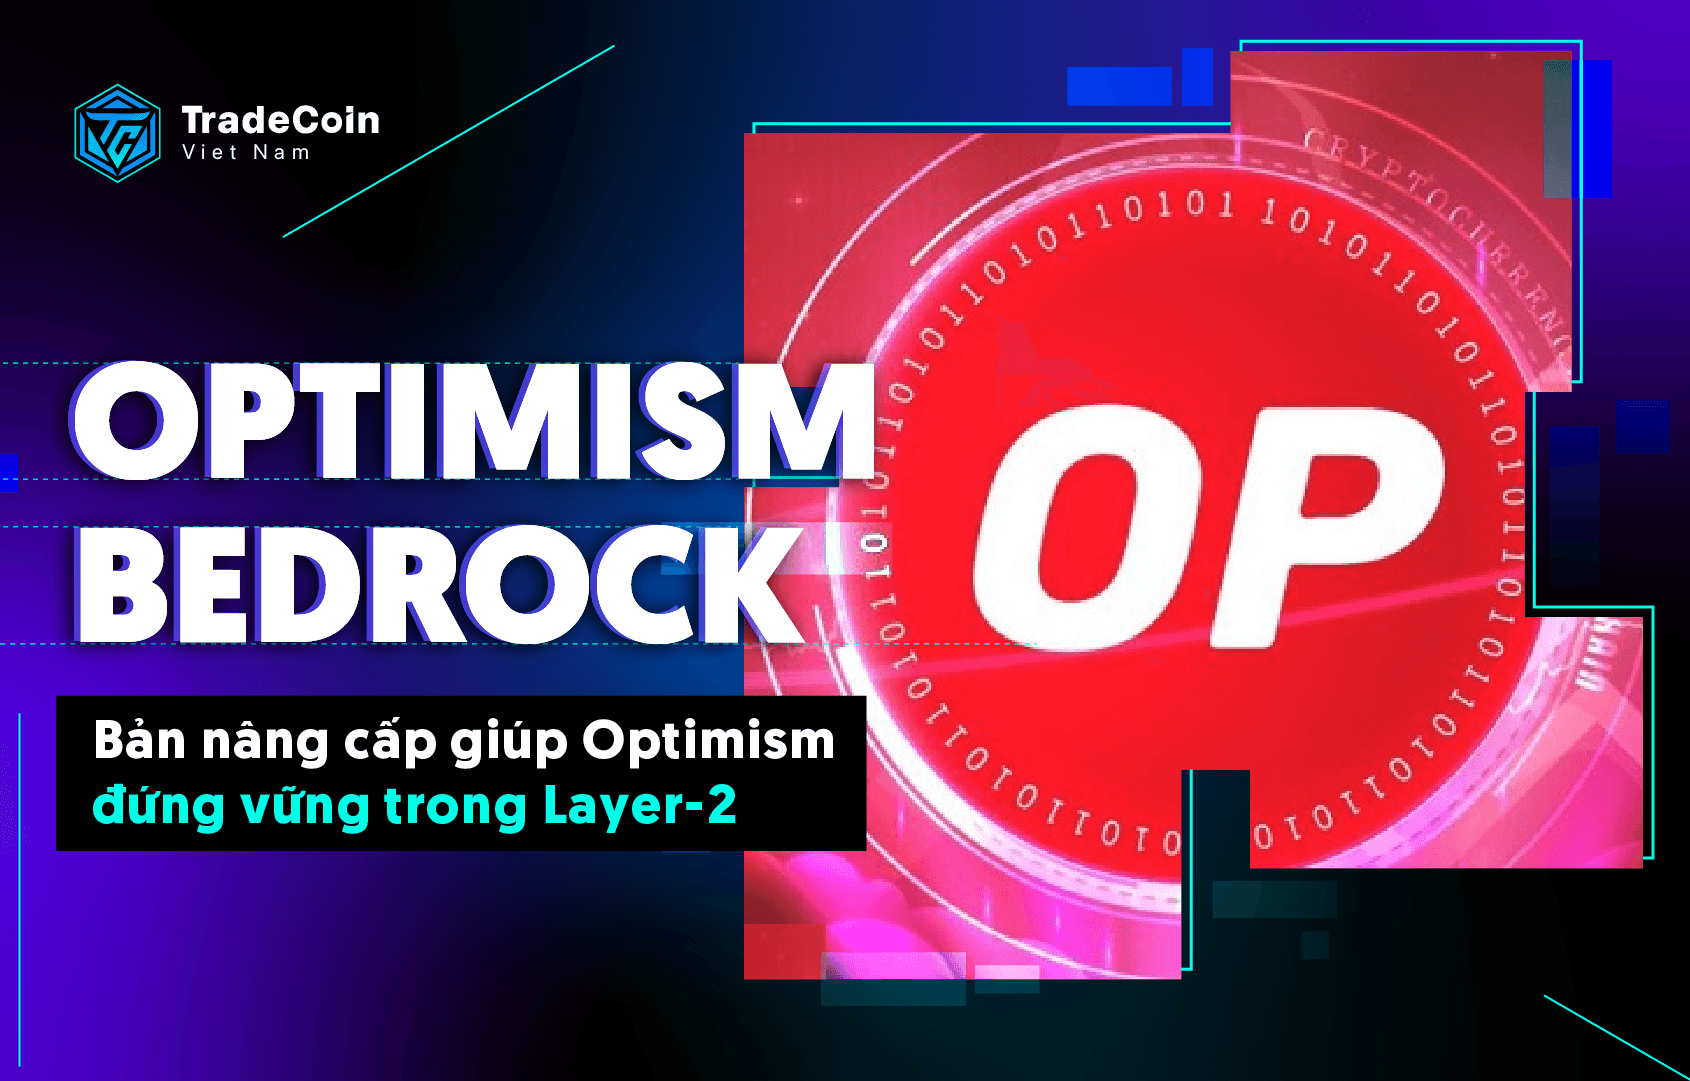 Optimism Bedrock là gì? Bản nâng cấp giúp Optimism đứng vững trong Layer-2